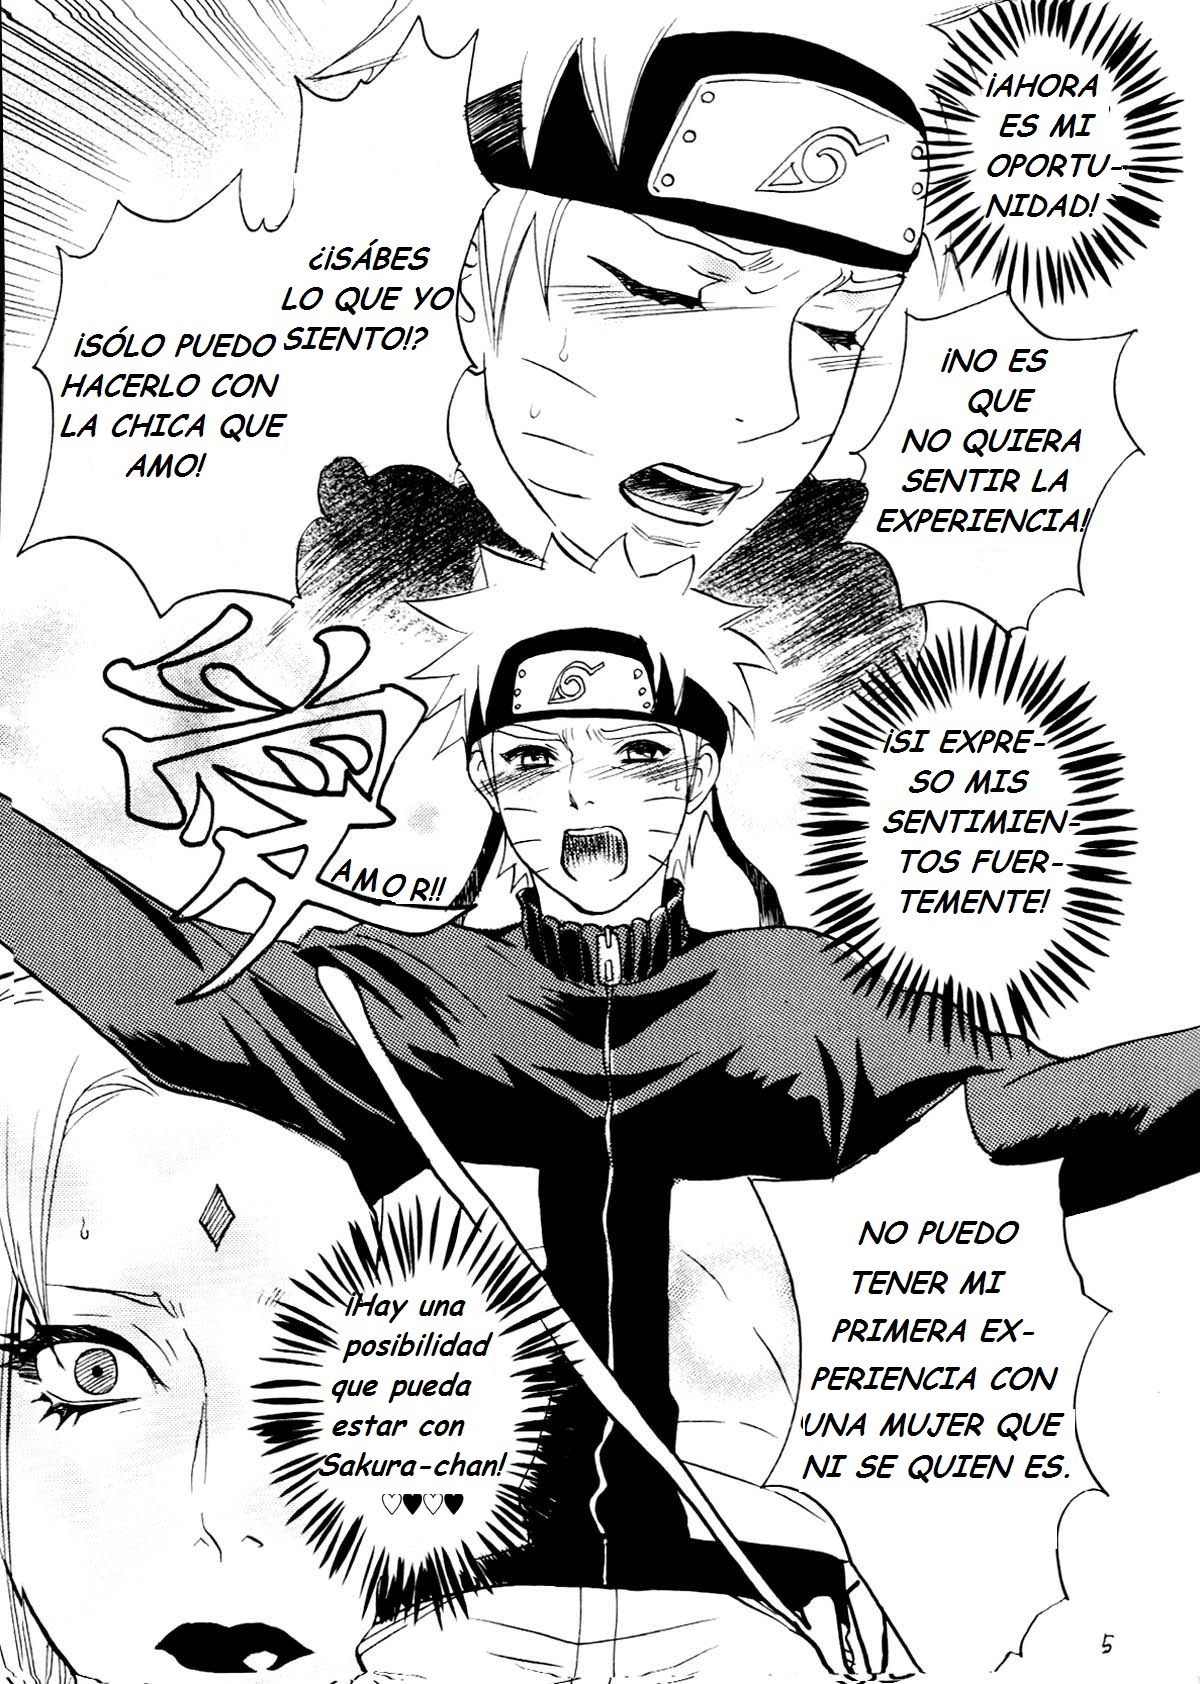 Fude Oroshi no Gi (Naruto Manga Yaoi) - 3 - Comics Porno - Hentai Manga - Cartoon XXX